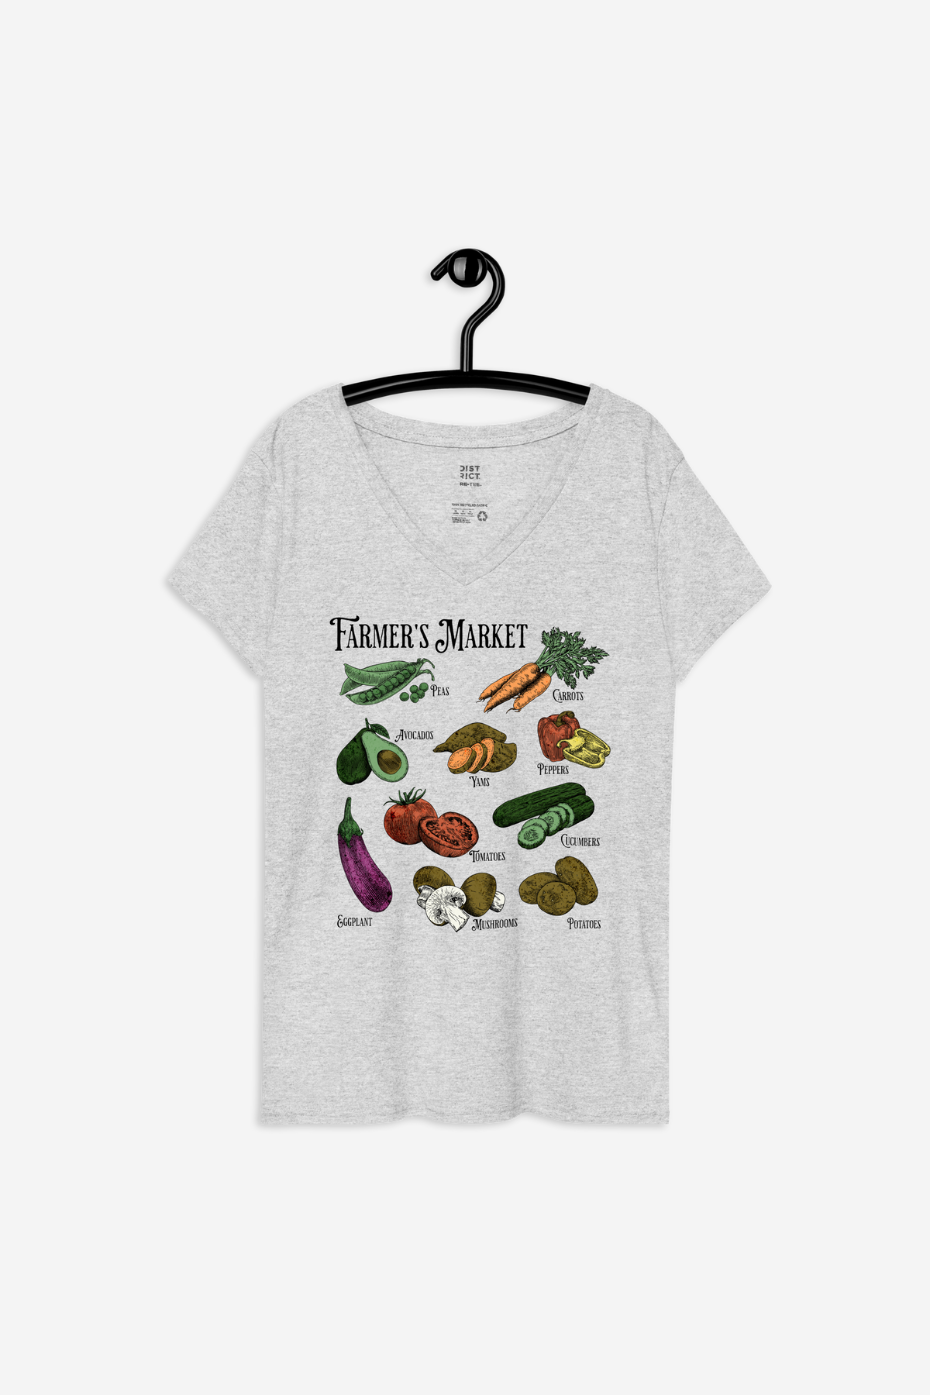 Farmer's Market Women’s recycled v-neck t-shirt